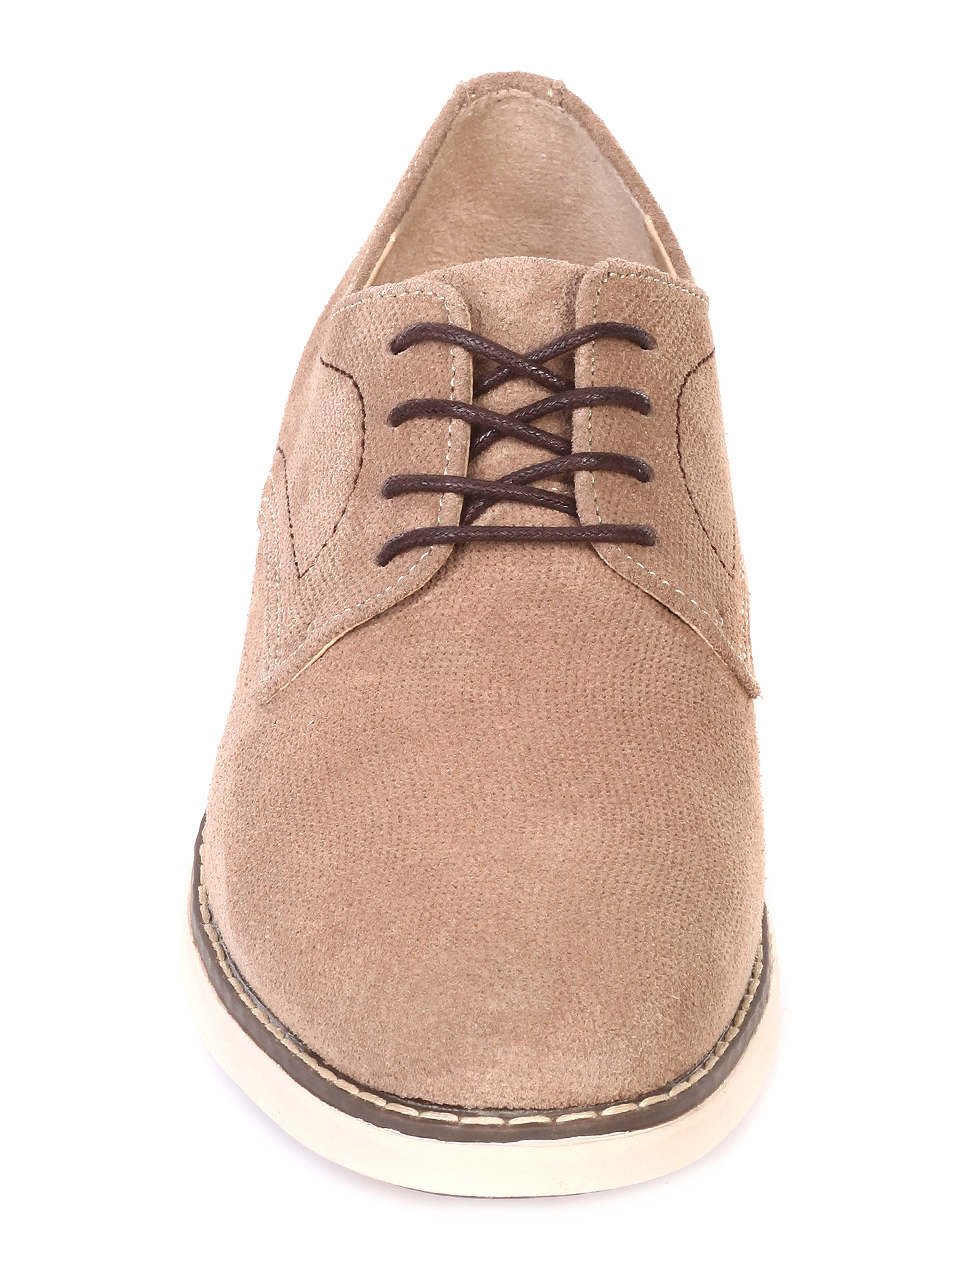 Ежедневни мъжки обувки от естествен велур 7N-19209 apricot